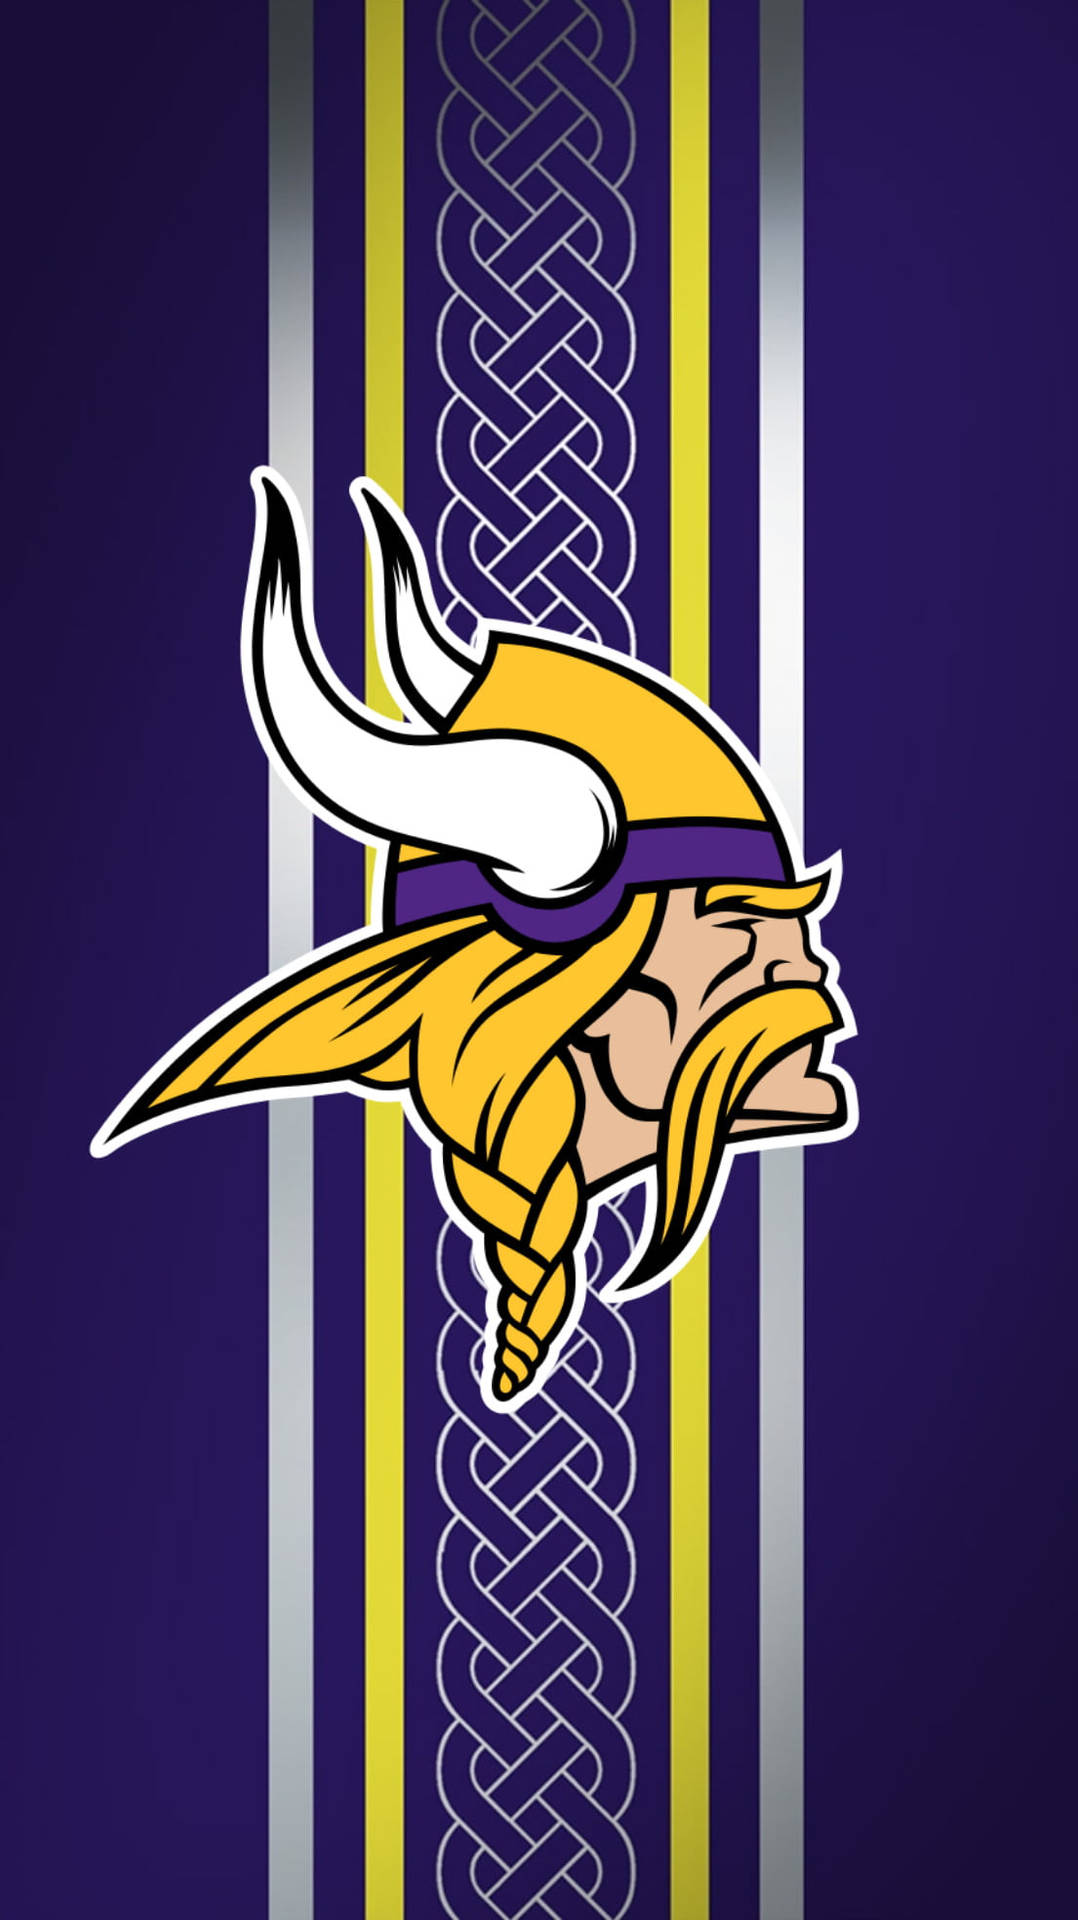 Vikinger NFL Team Logo Wallpaper